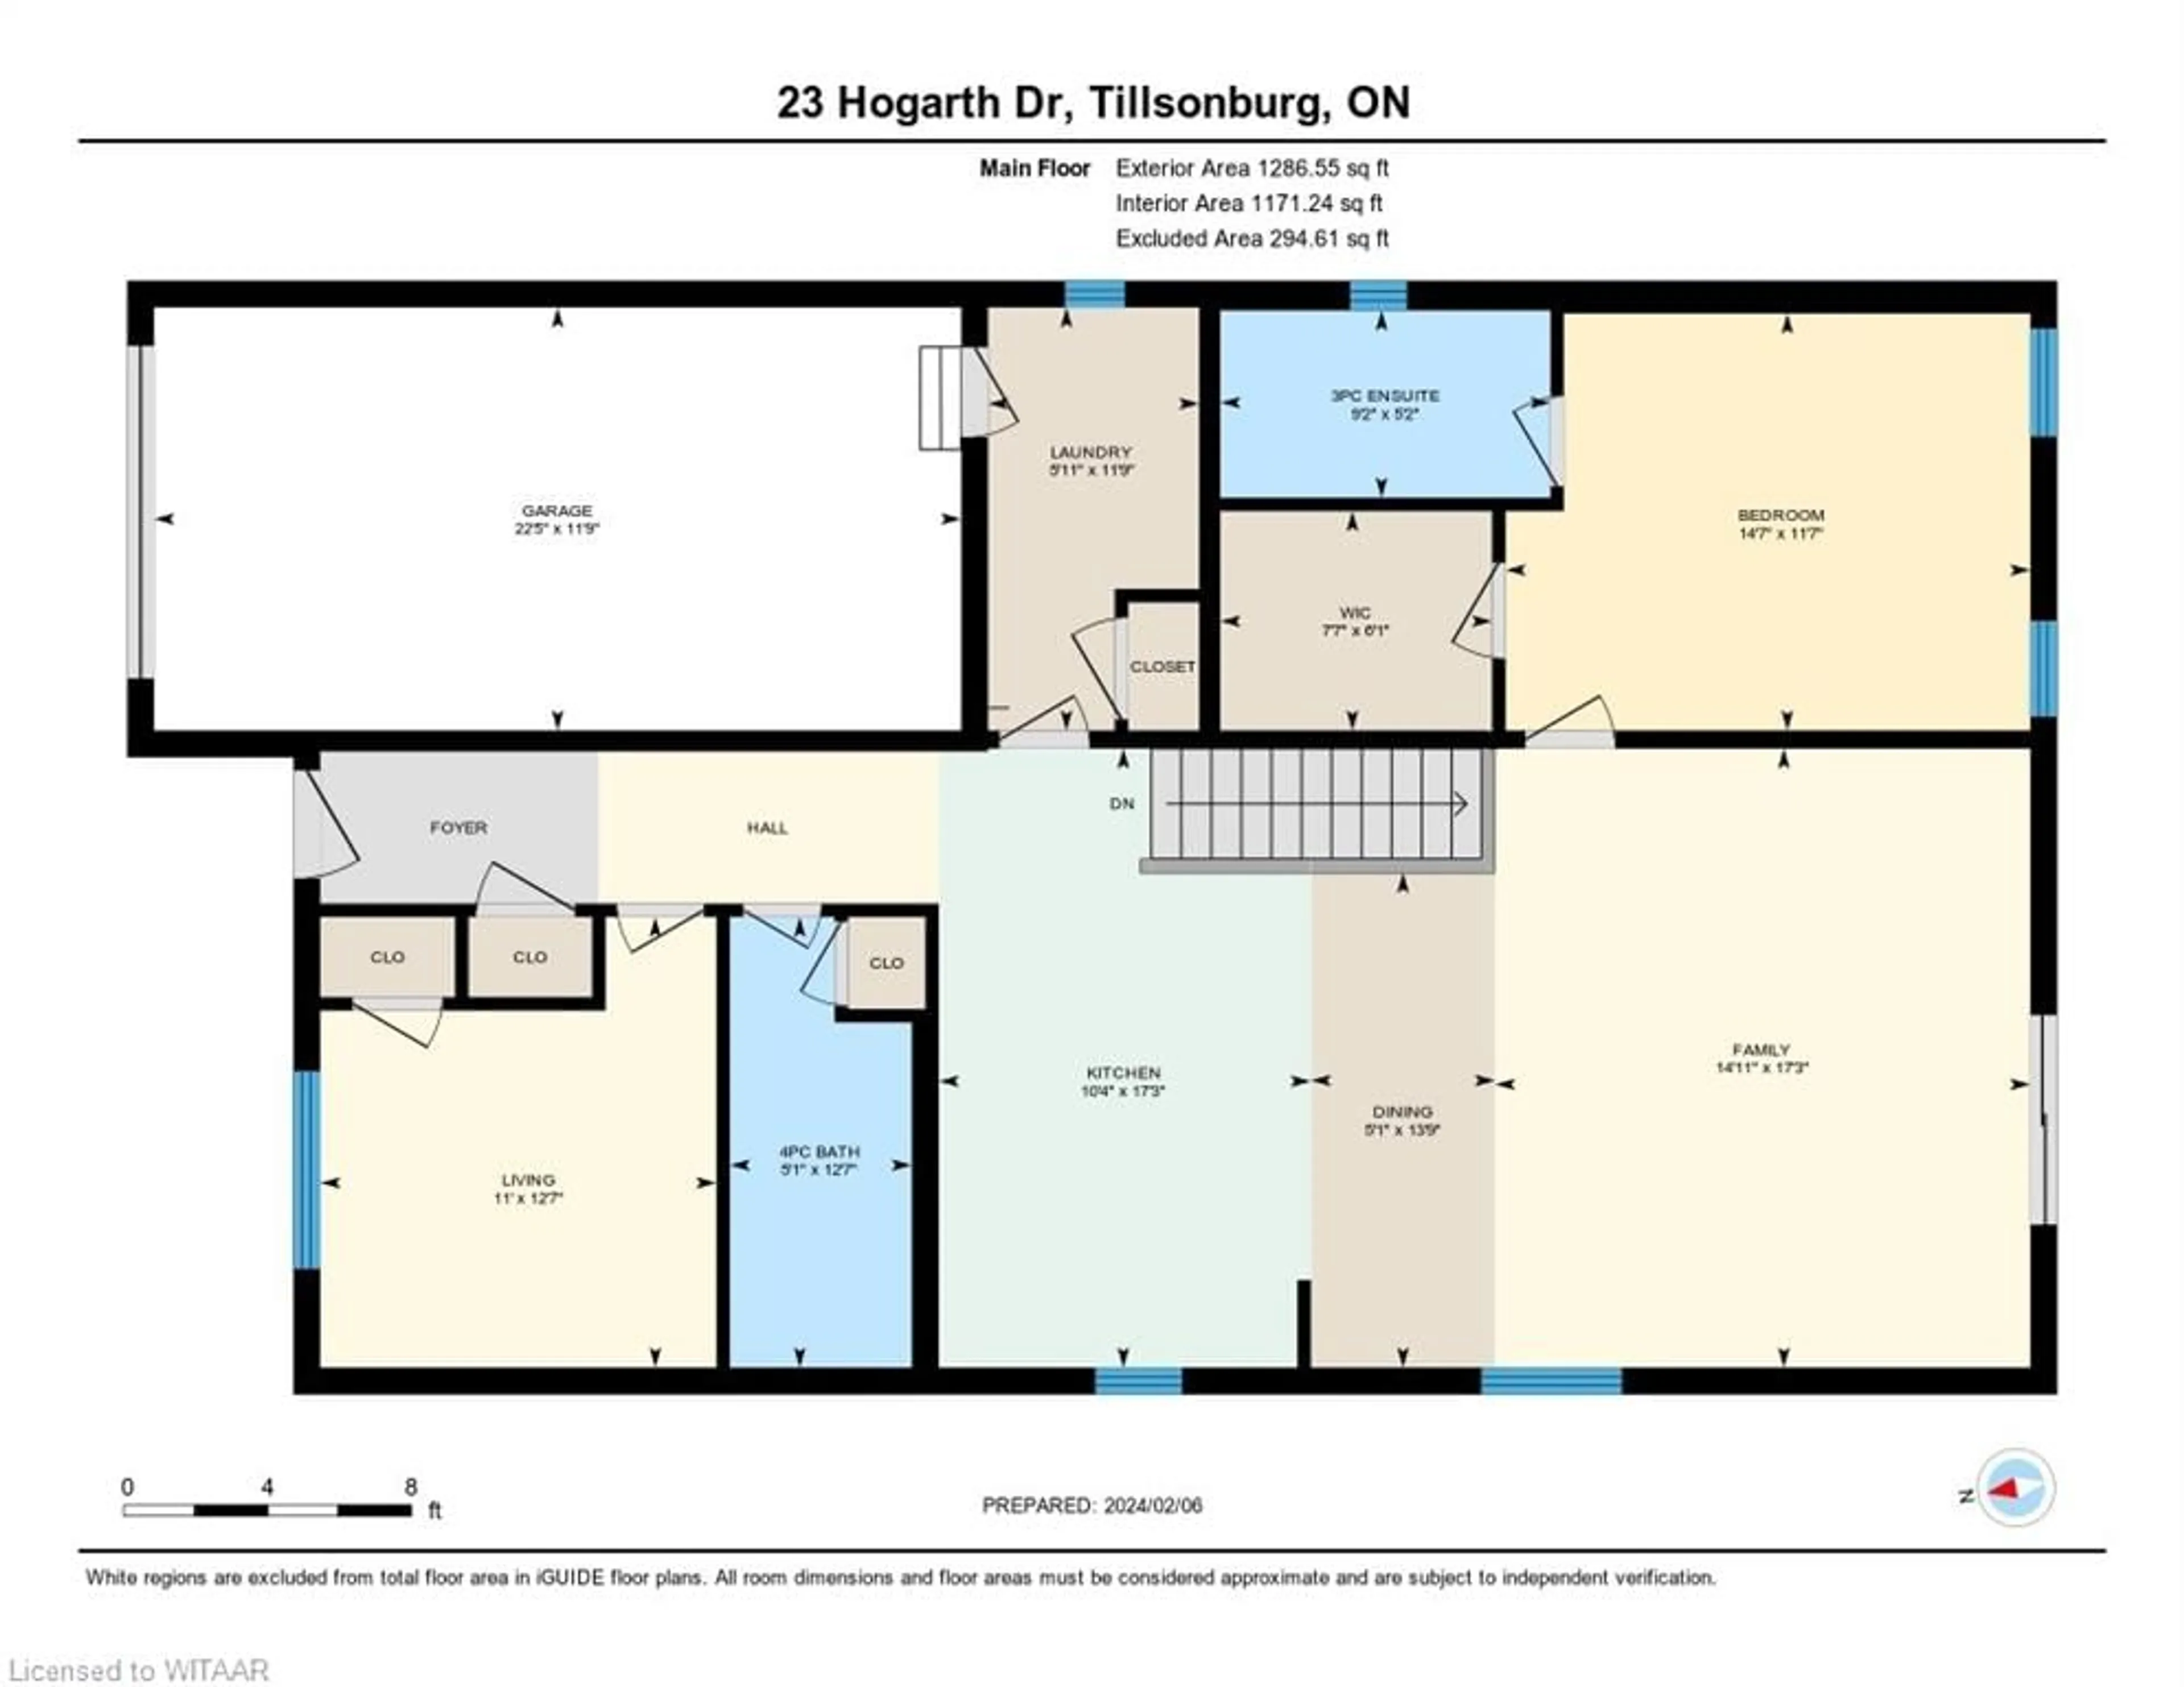 Floor plan for 23 Hogarth Dr, Tillsonburg Ontario N4G 0C2